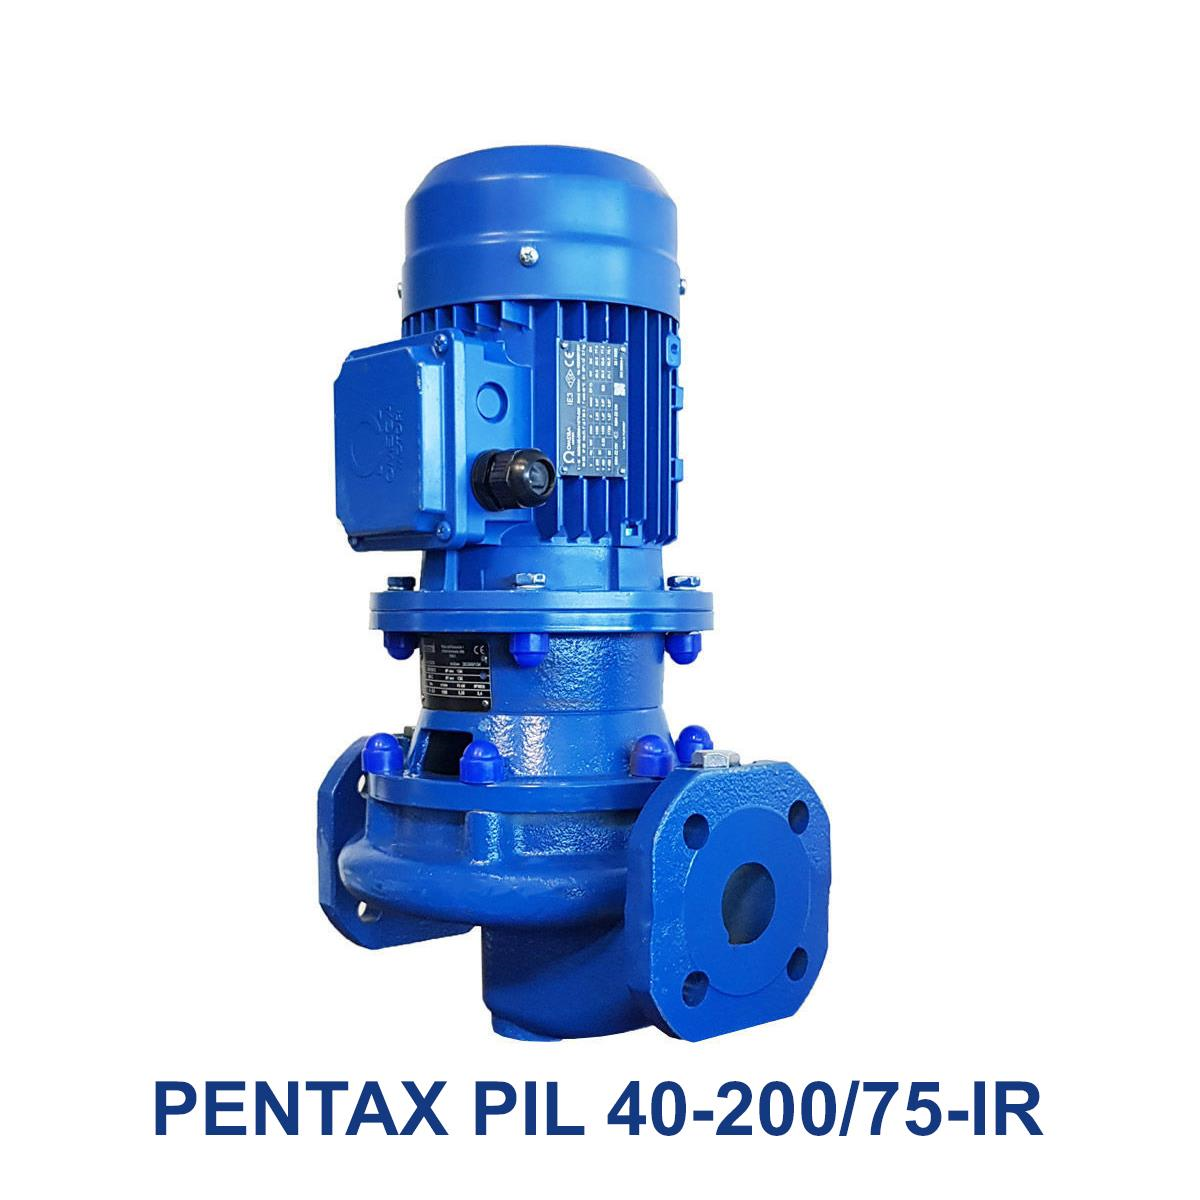 PENTAX-PIL-40-200-75-IR